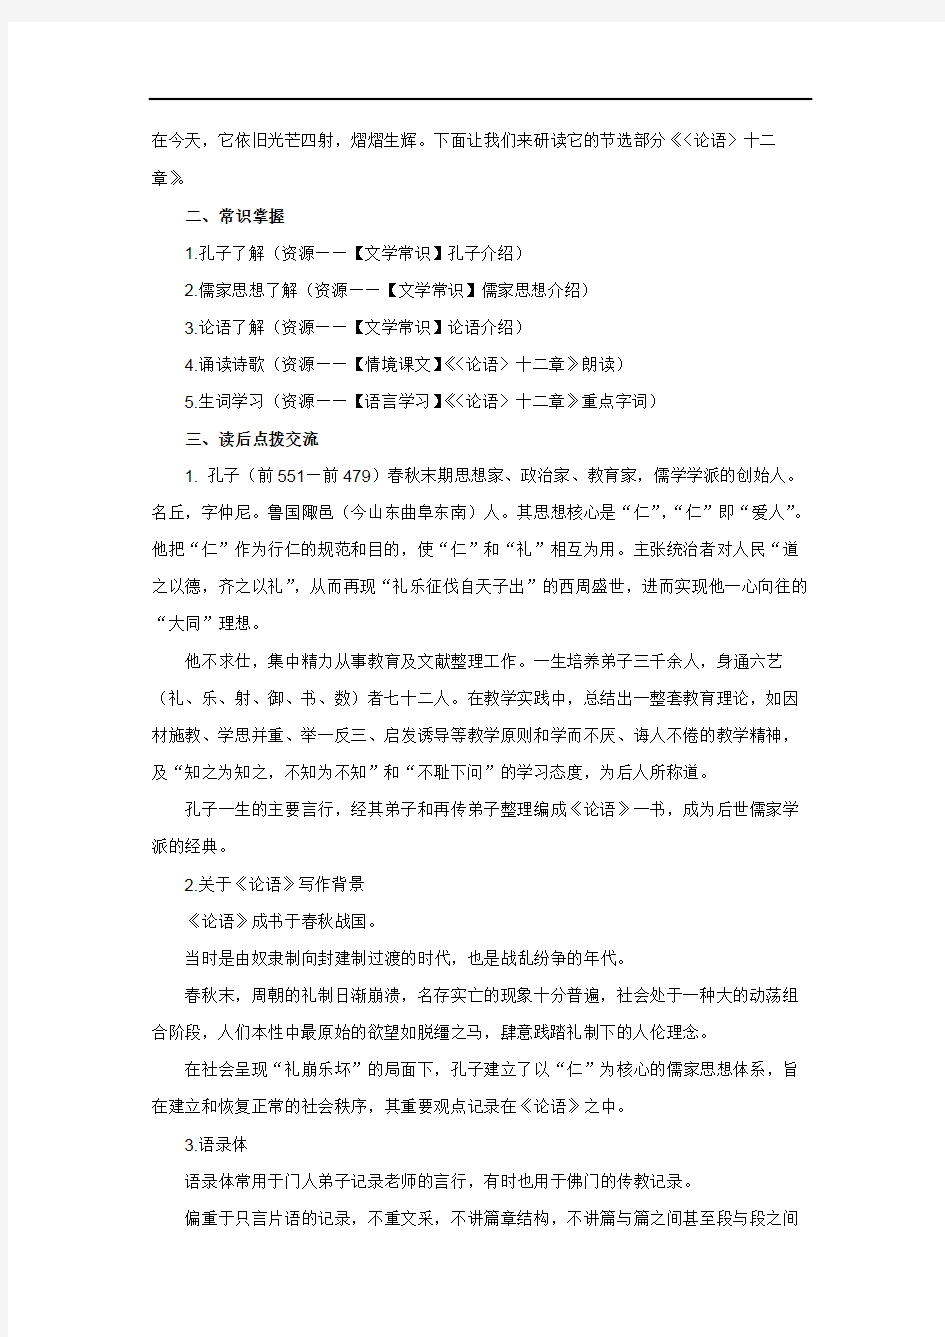 【教学方案】儒家经典研习专题——《论语》十二章研习_1498